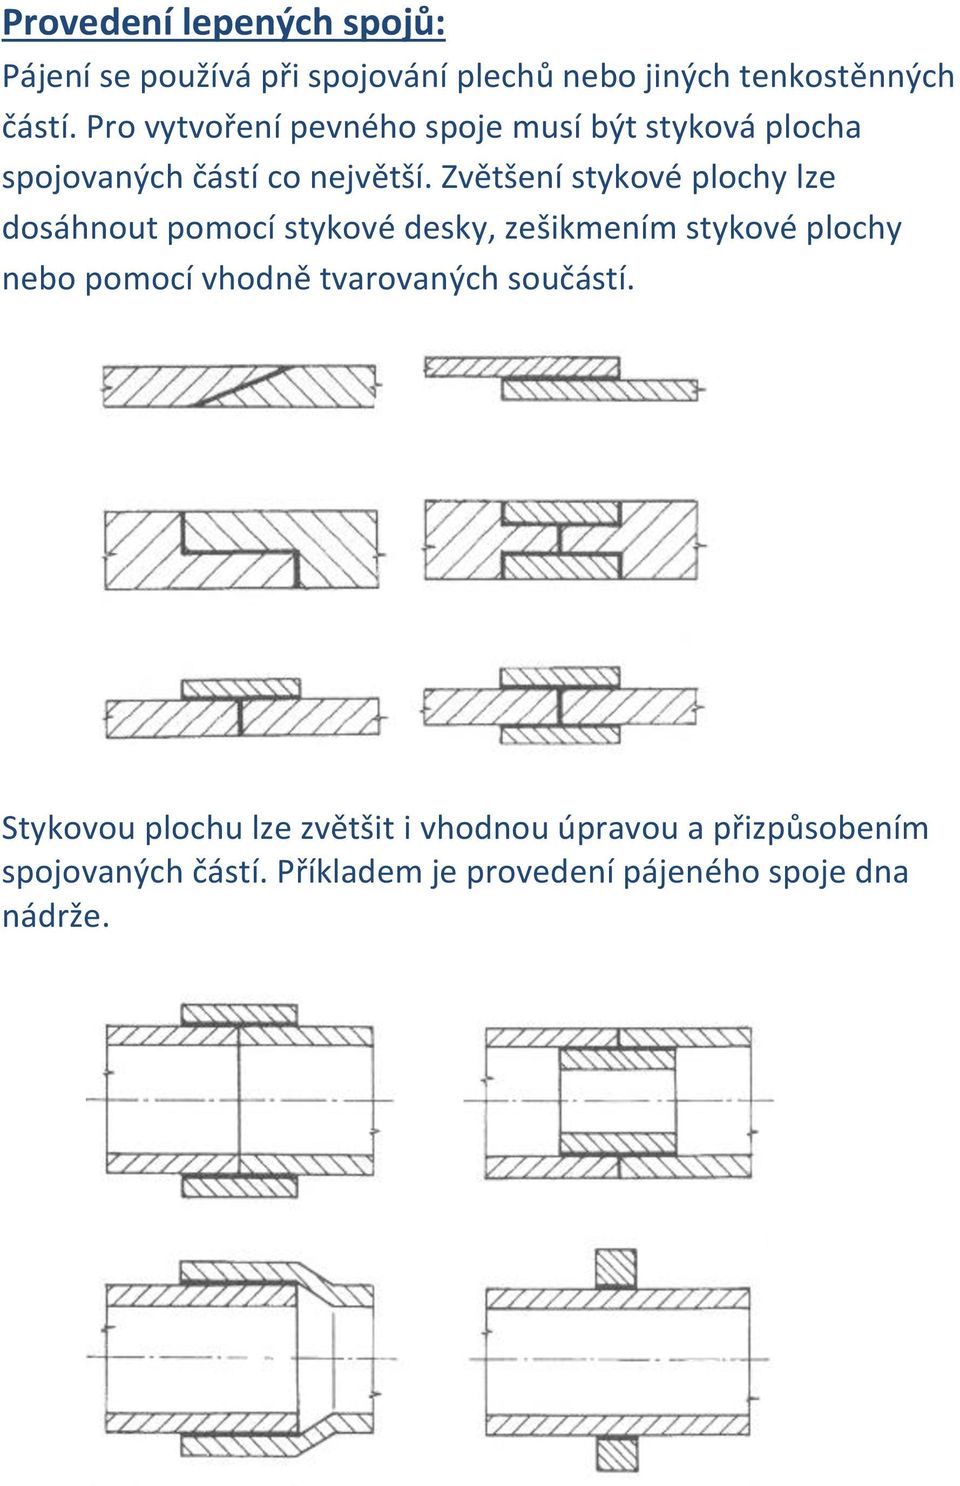 Zvětšení stykové plochy lze dosáhnout pomocí stykové desky, zešikmením stykové plochy nebo pomocí vhodně